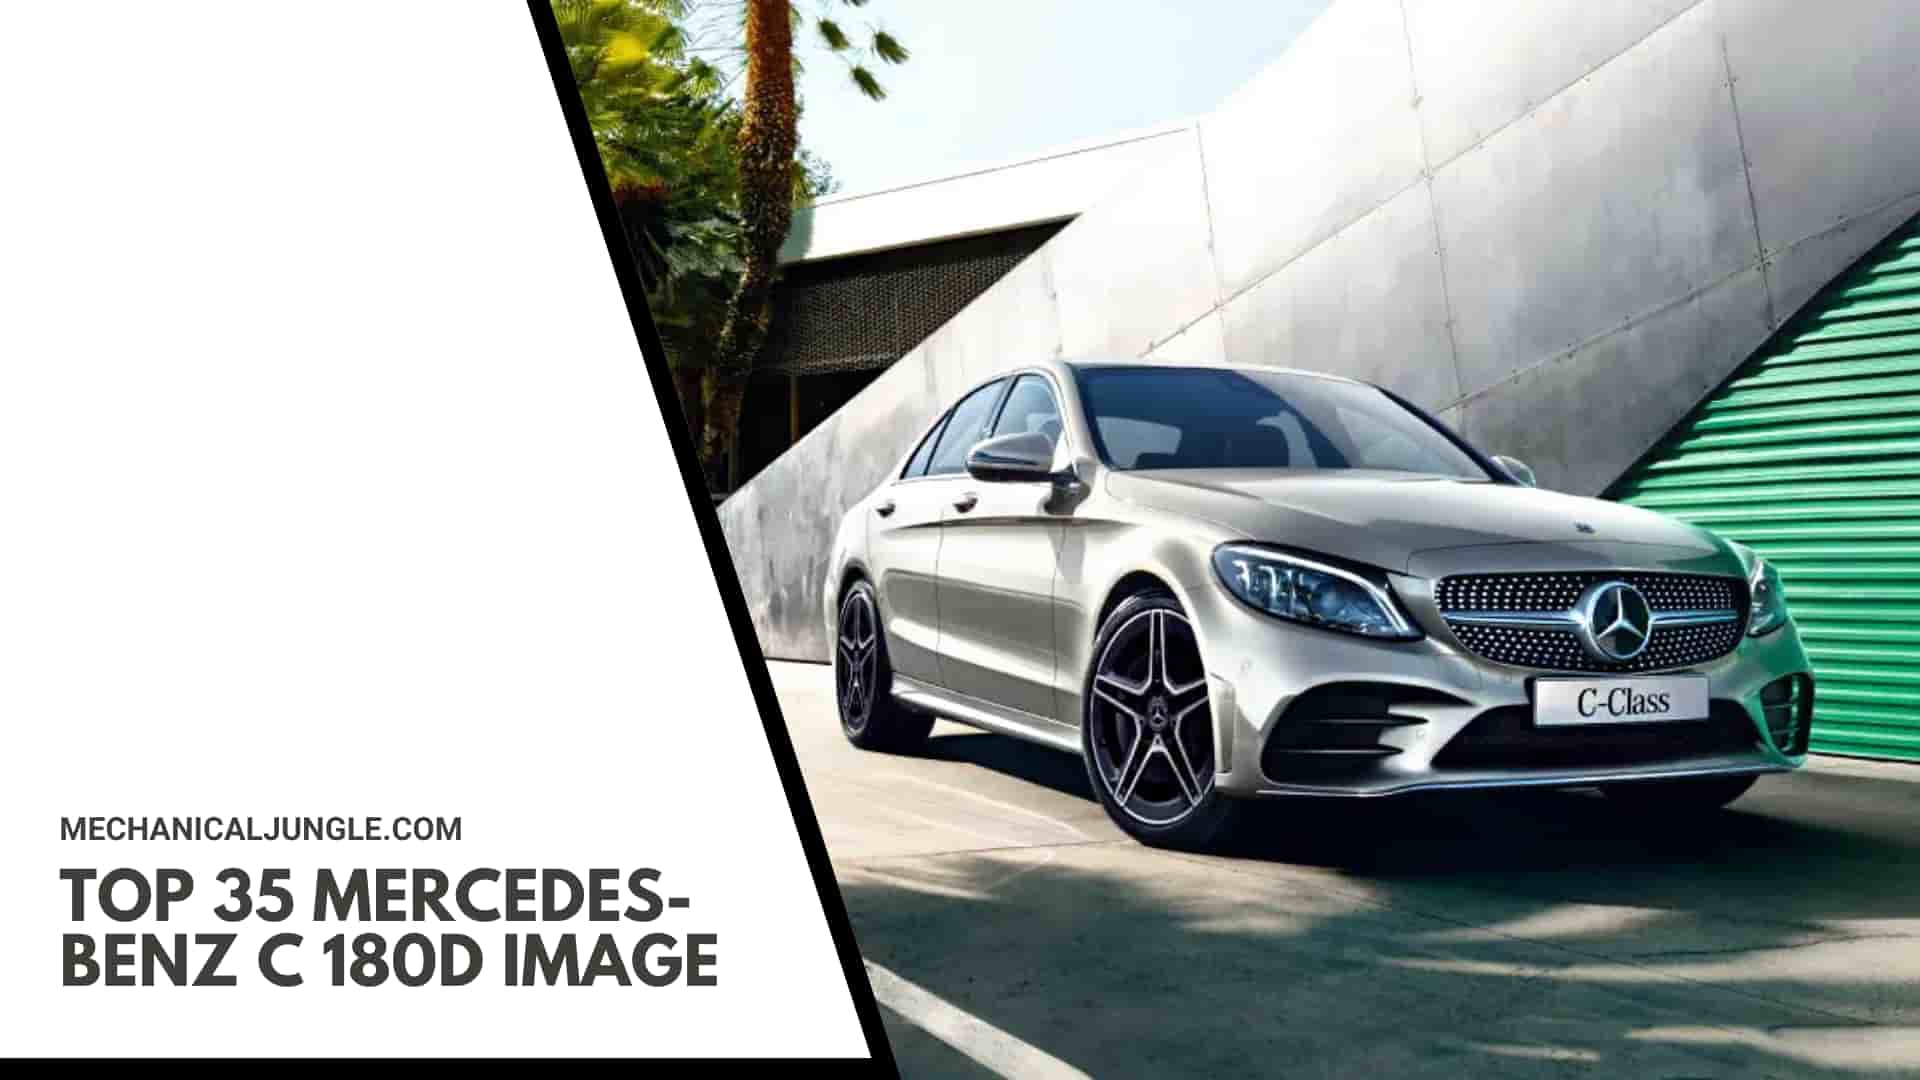 Top 35 Mercedes-Benz C 180d Image